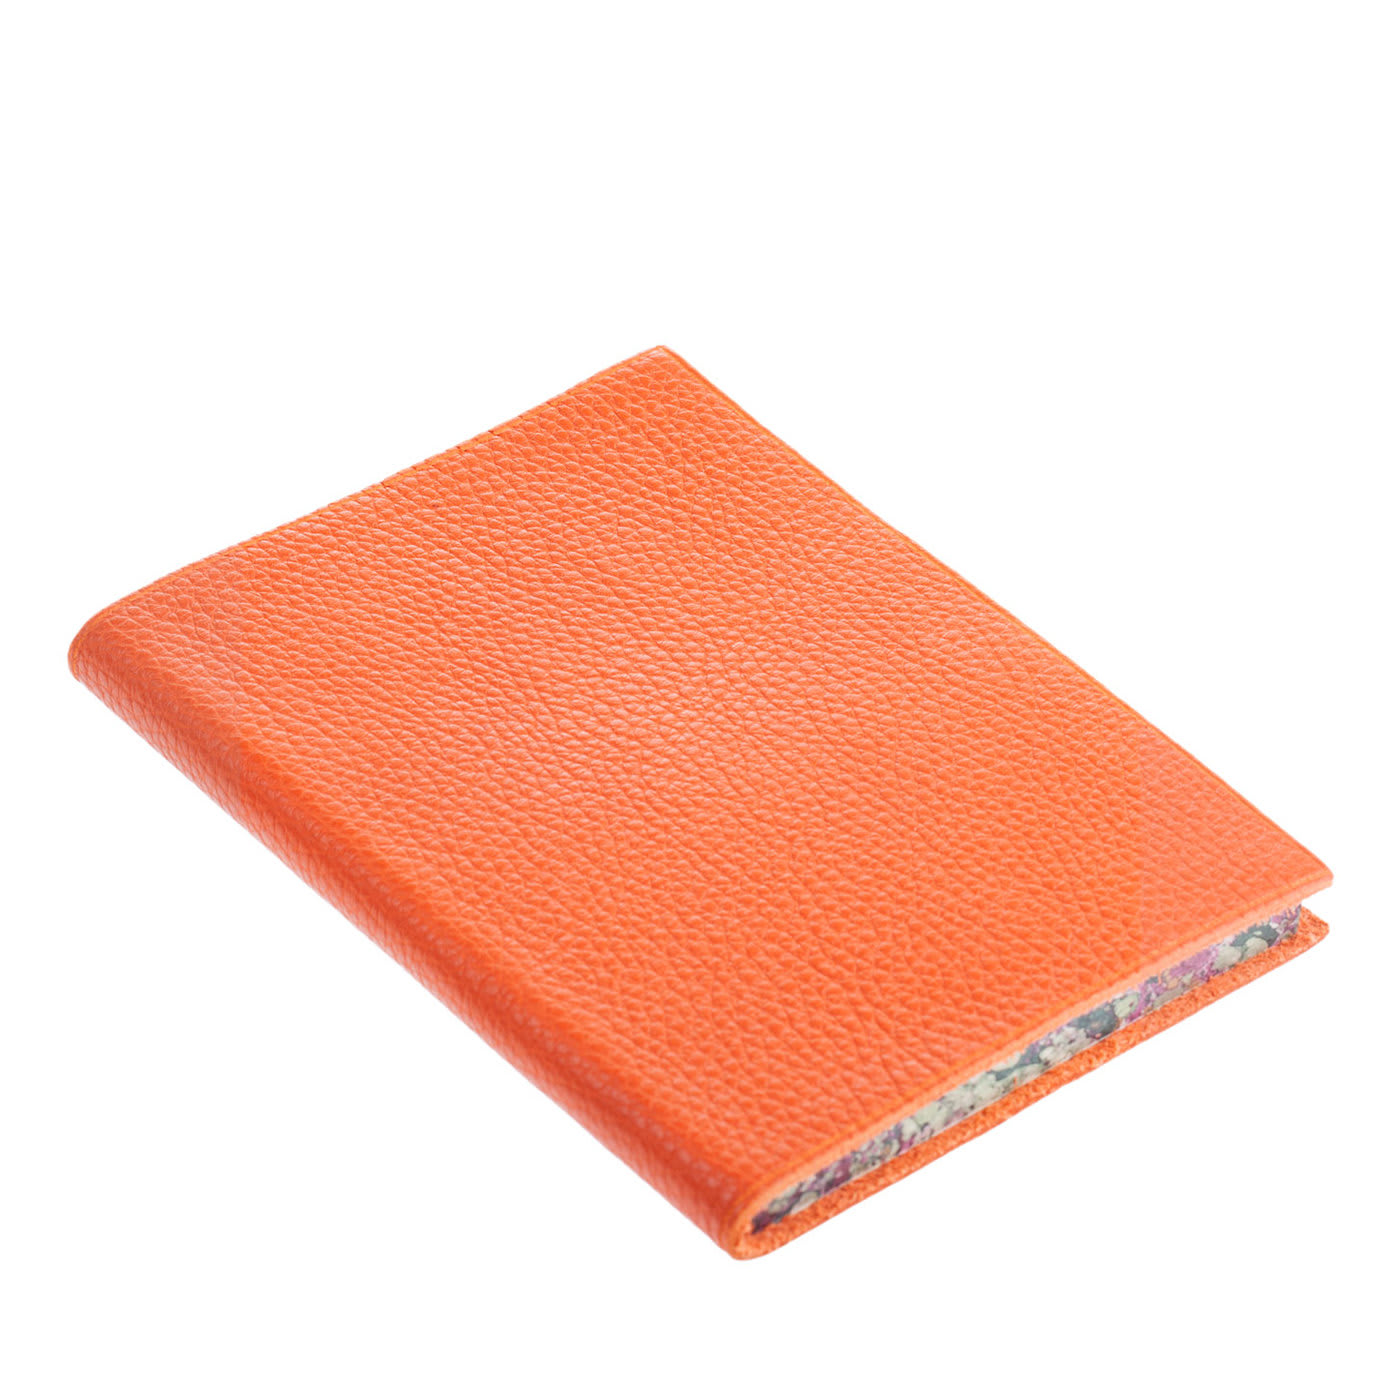 Arancia Leather Notebook - Giannini